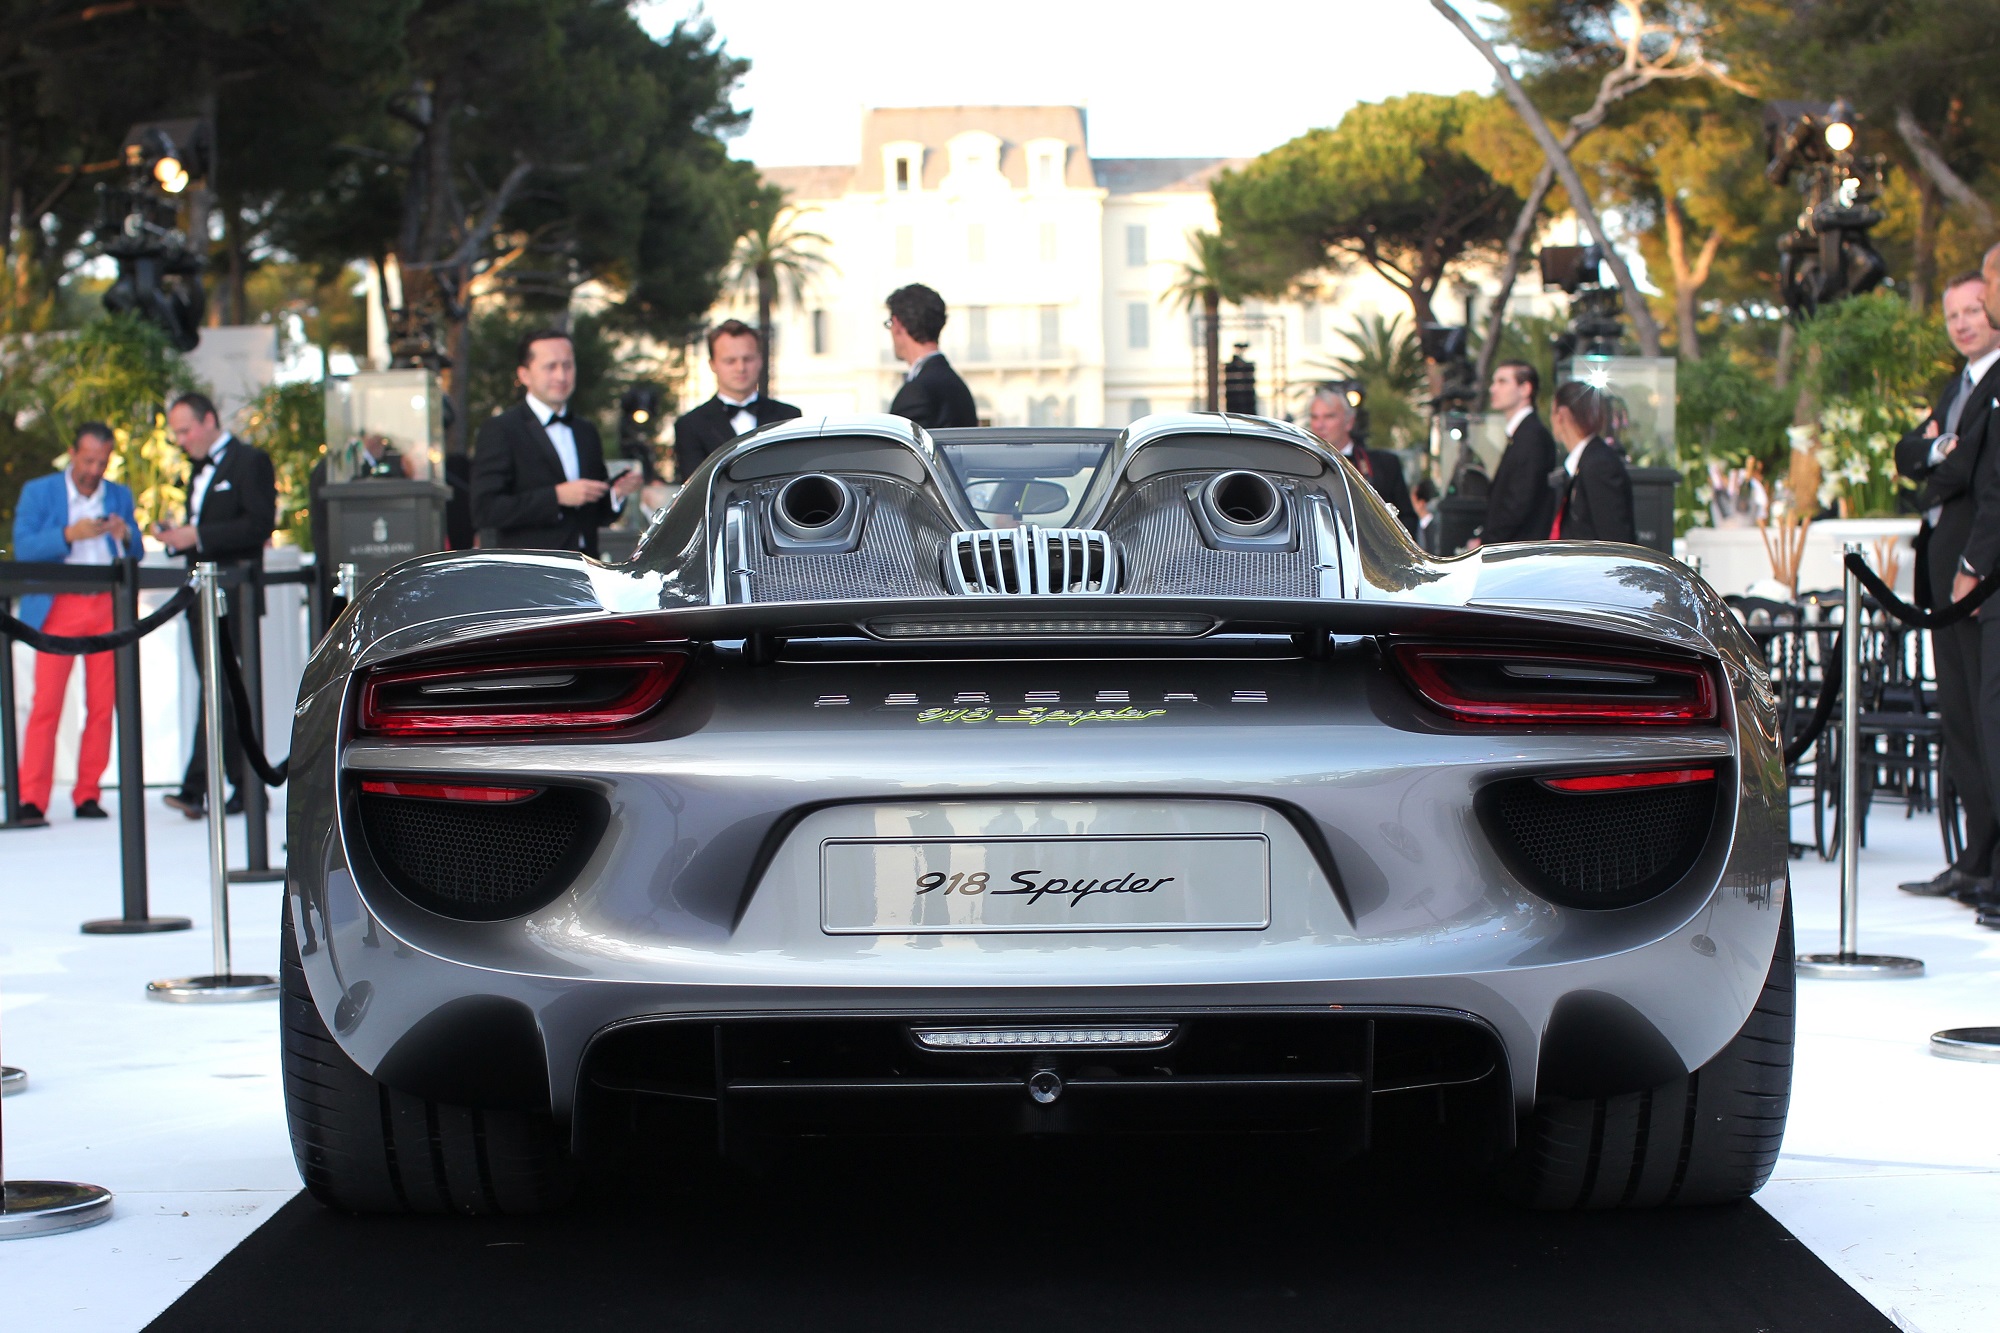 Porsche, Lamborghini and Bugatti. Yours for $123 Billion - Bloomberg